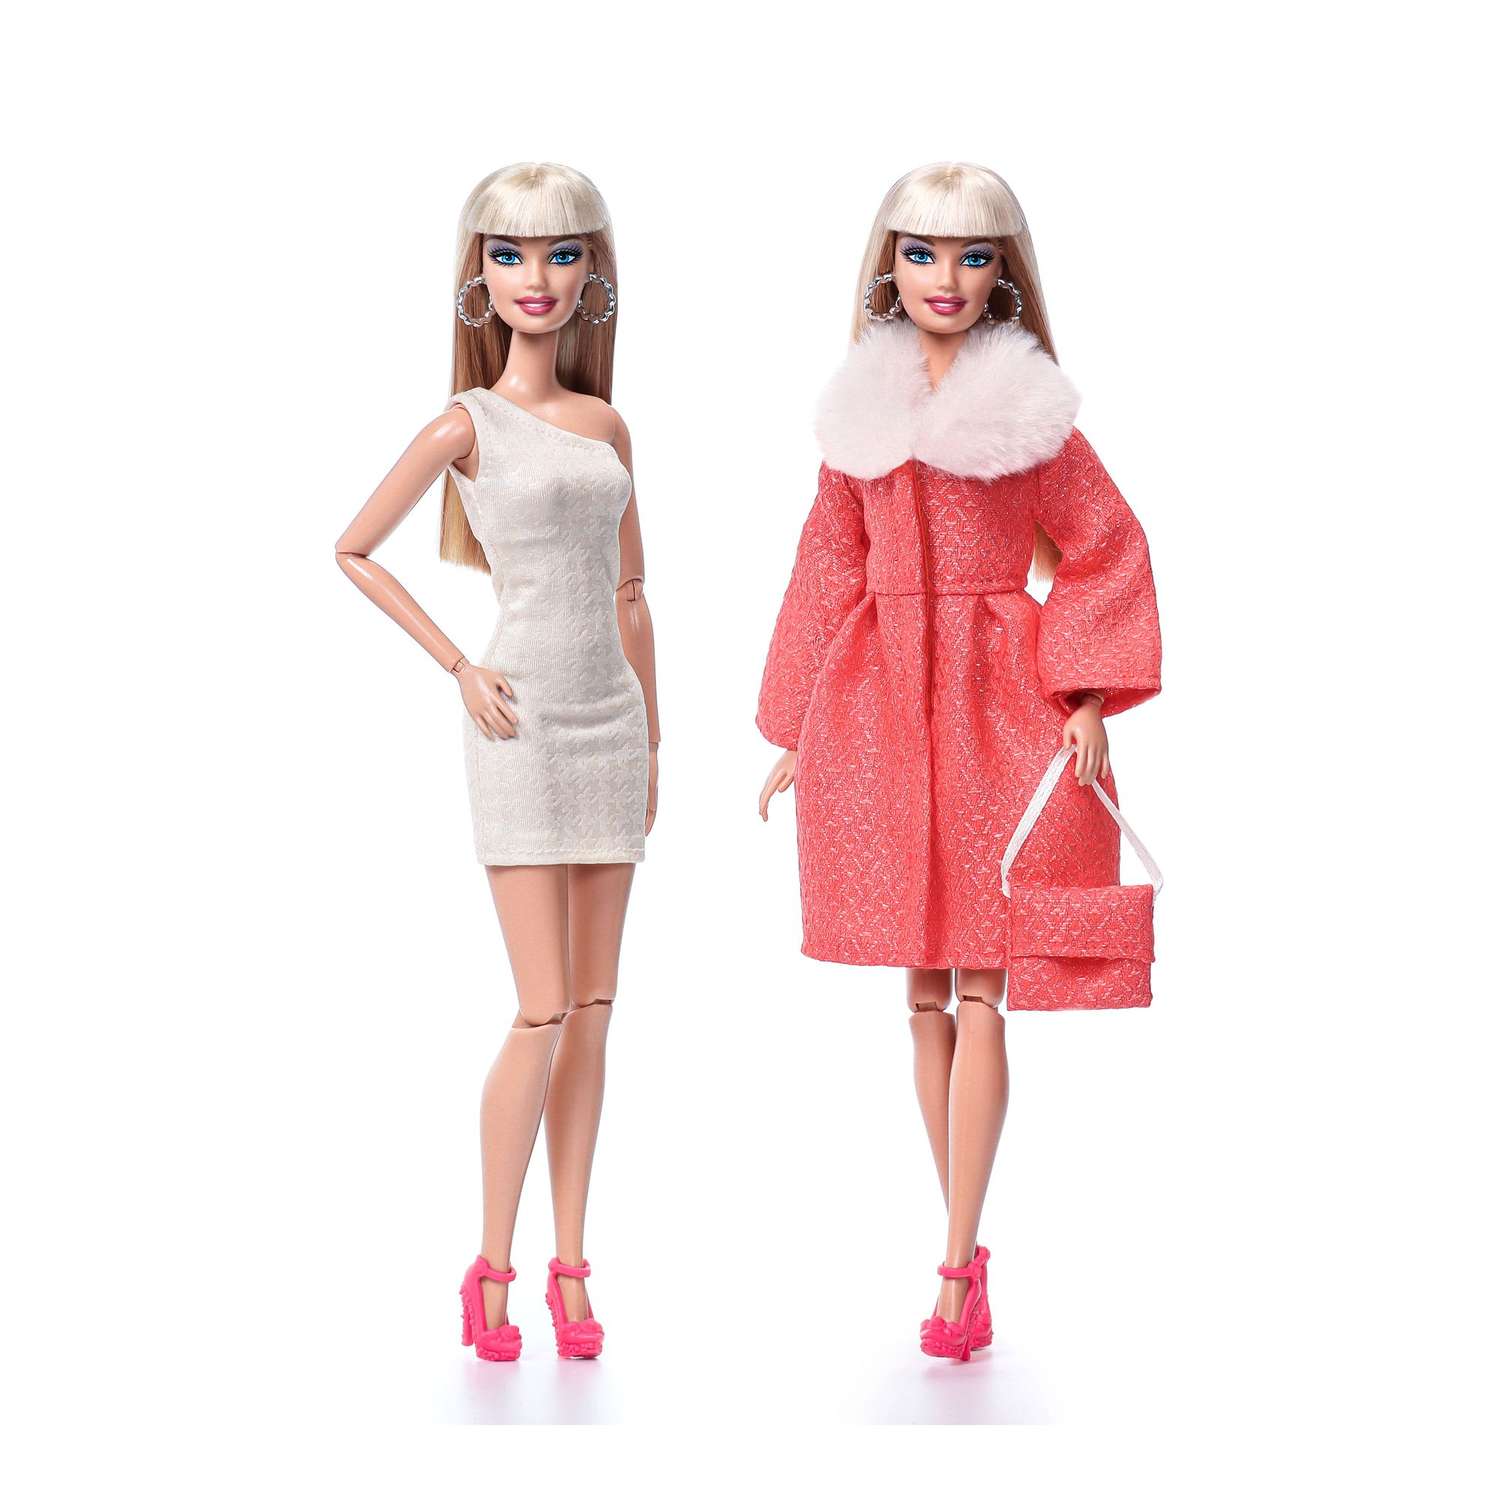 Одежда для кукол VIANA типа Барби 29 см набор пальто платье и сумка 1257.14 - фото 2